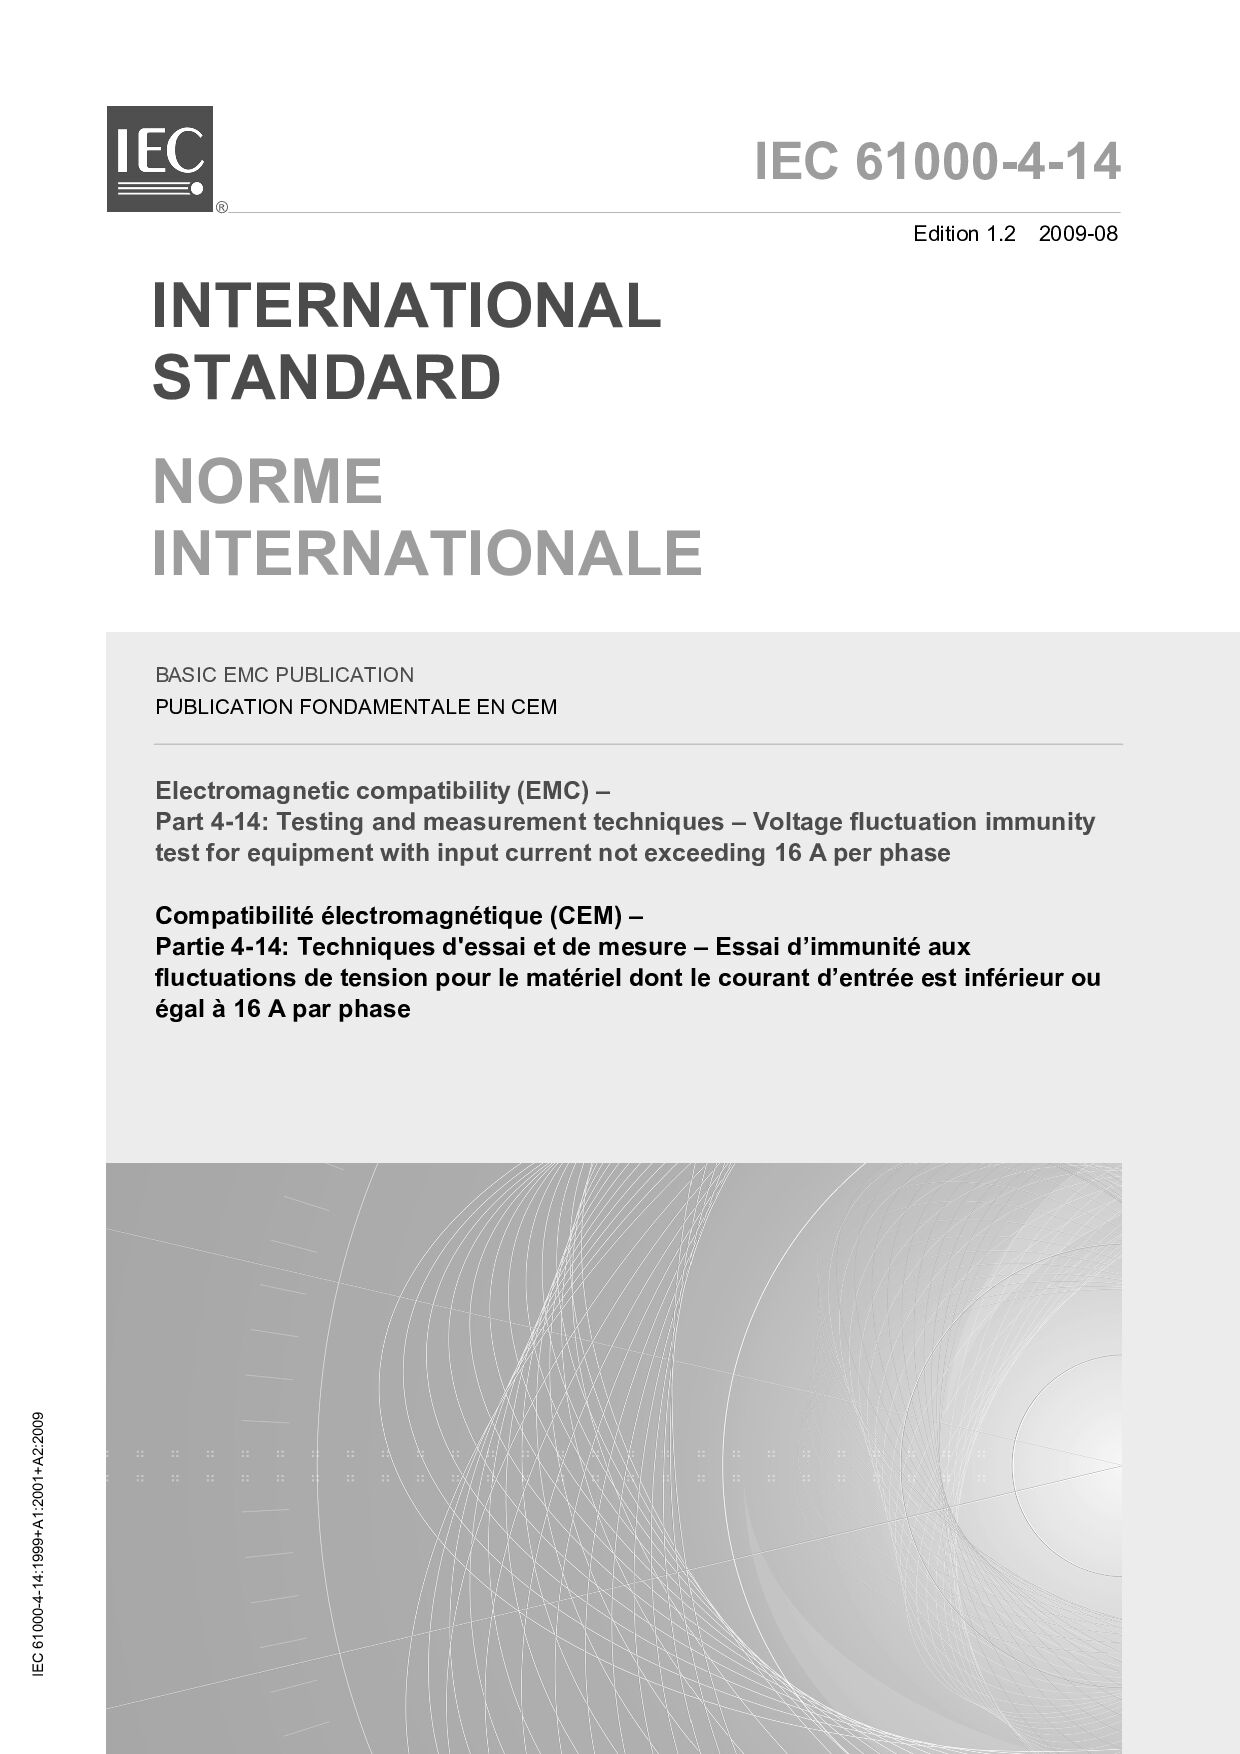 IEC 61000-4-14:2009封面图